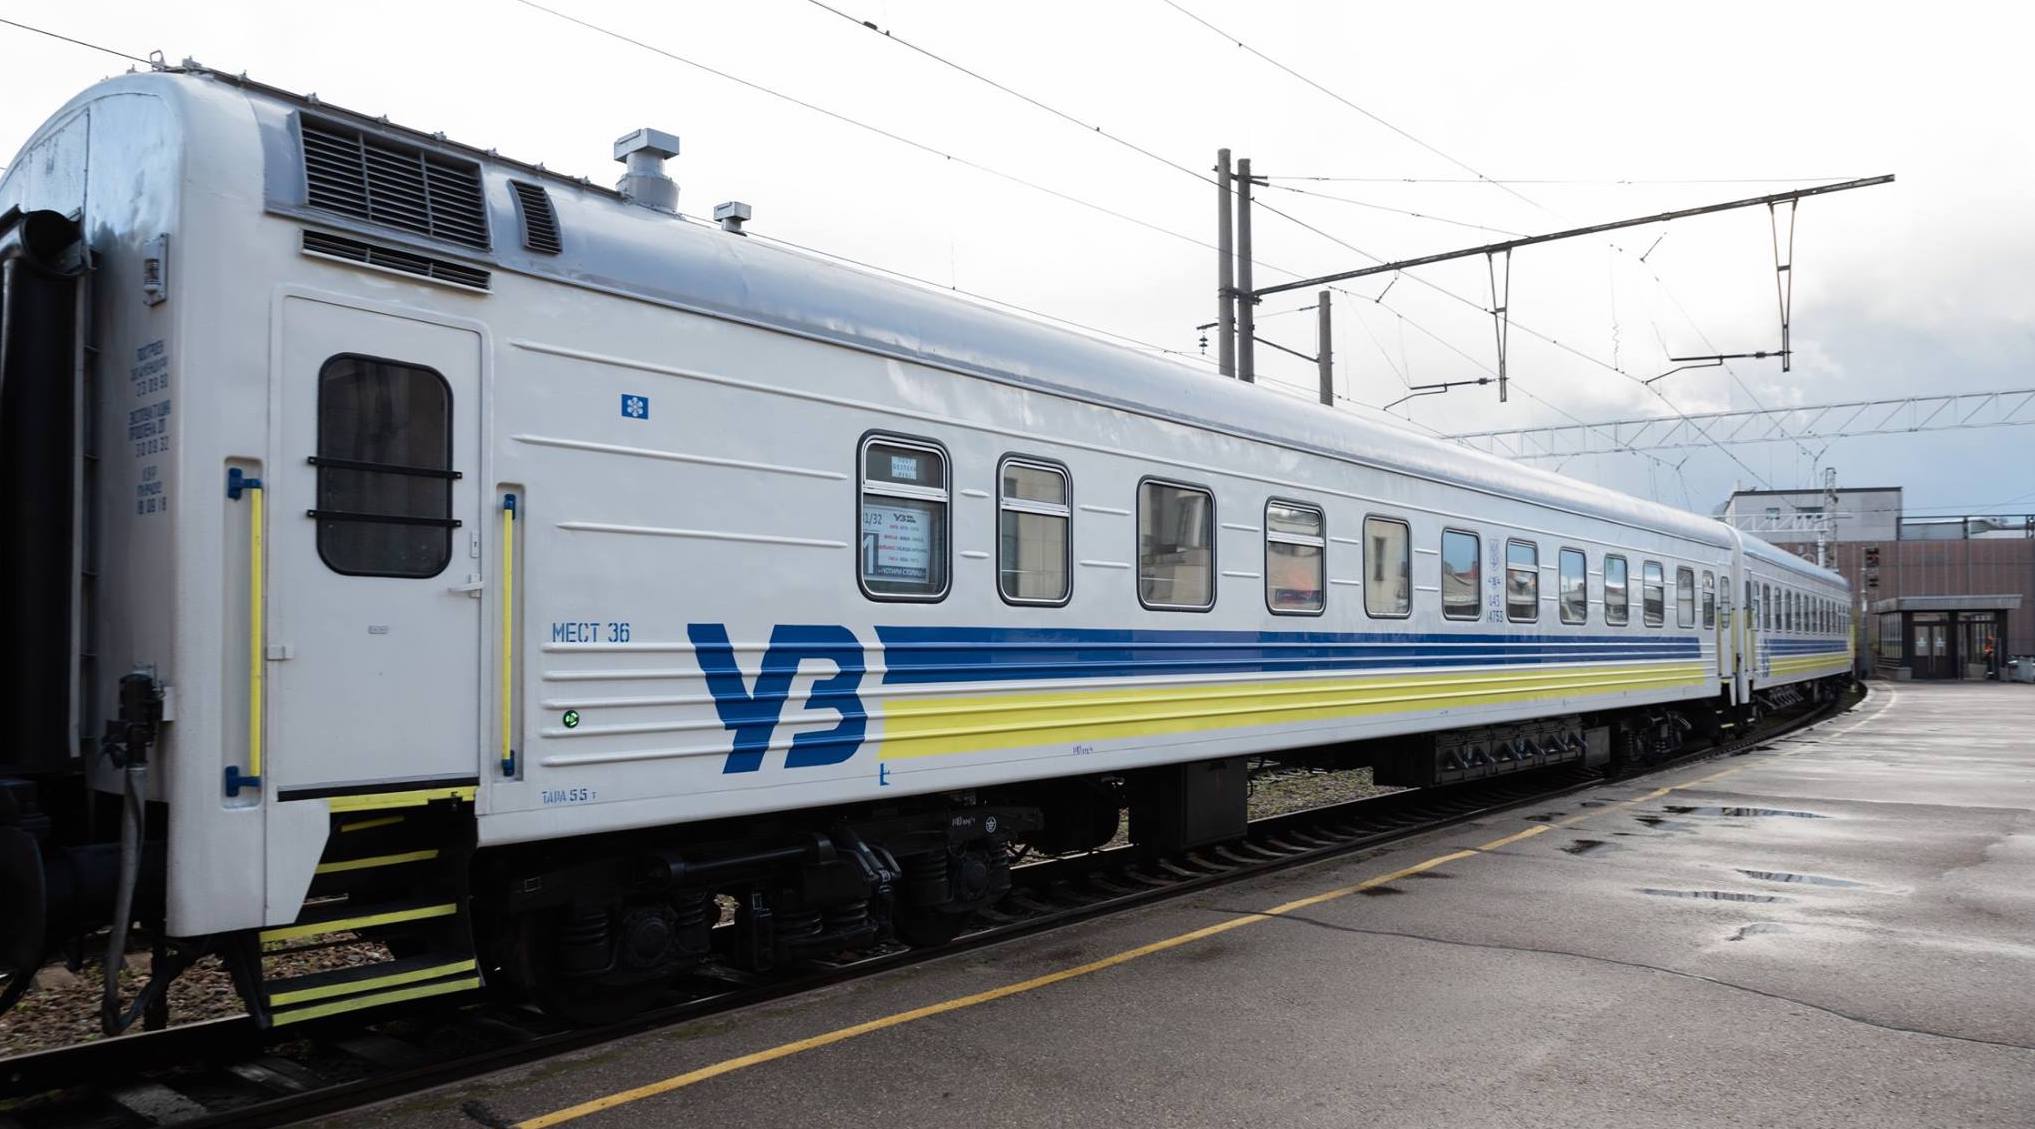 “Укрзализныця” назначила 7 дополнительных поездов на пасхальные и майские праздники